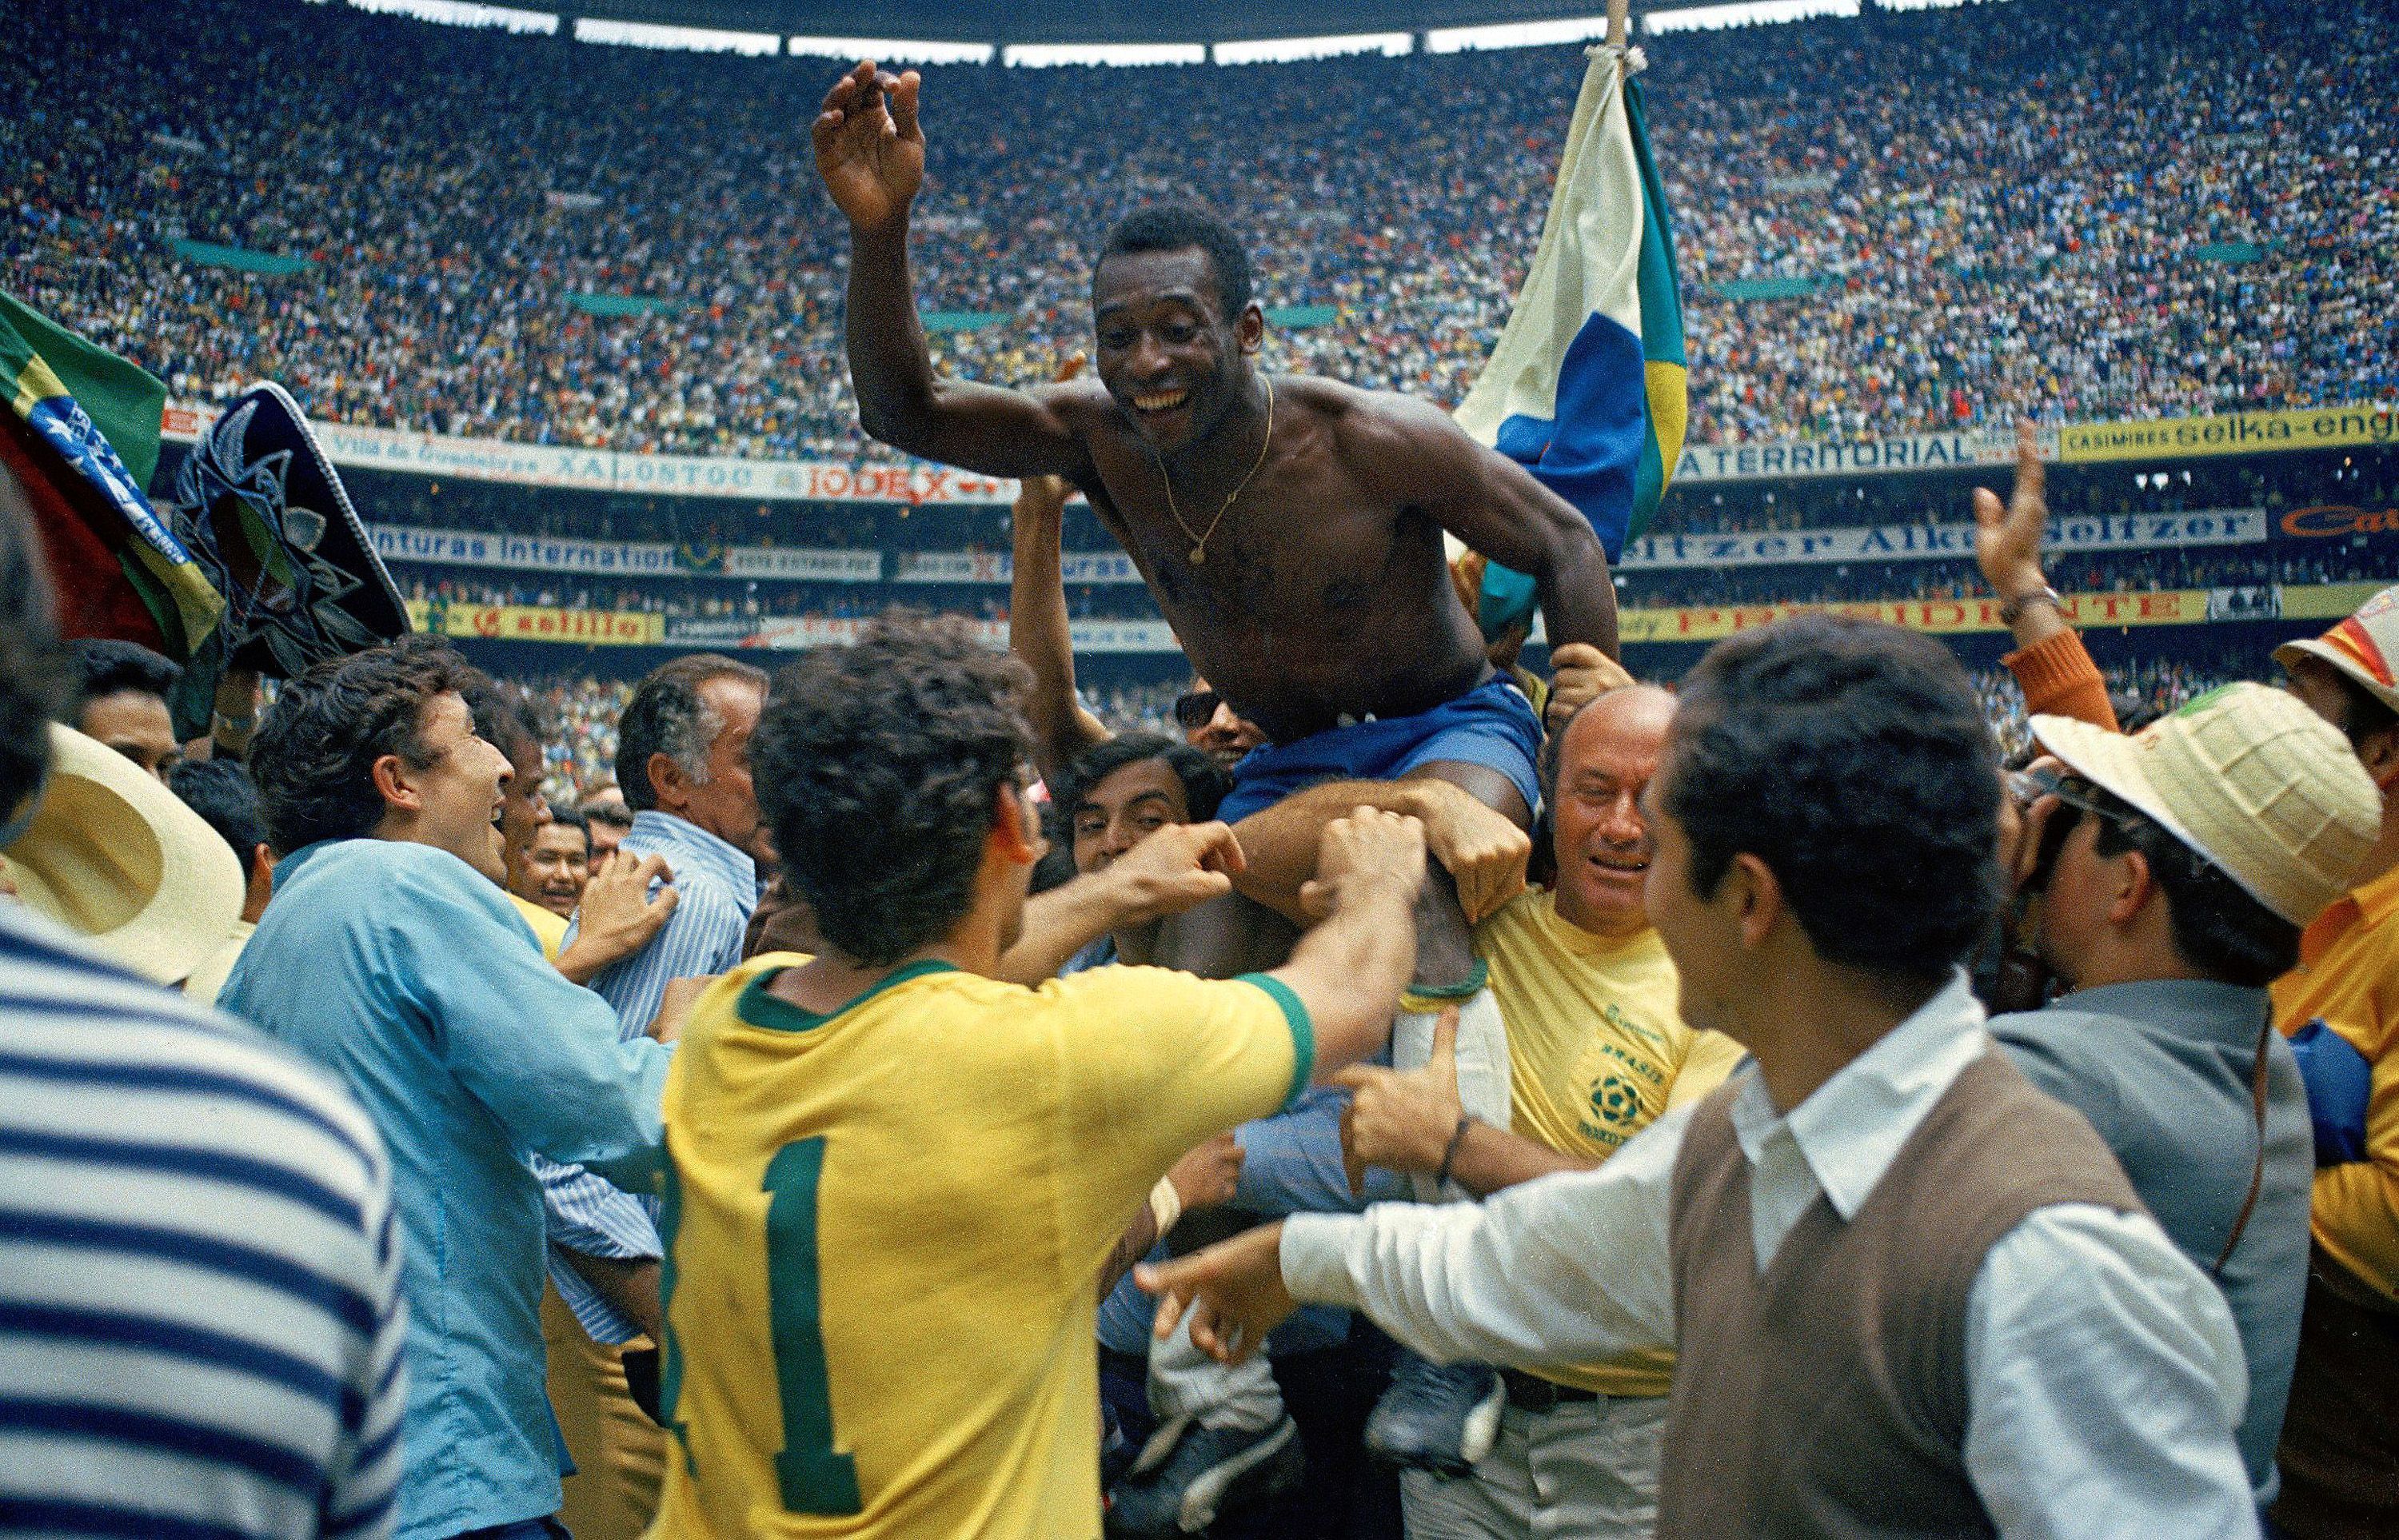 Pele gewann dreimal die Weltmeisterschaft, darunter 1970